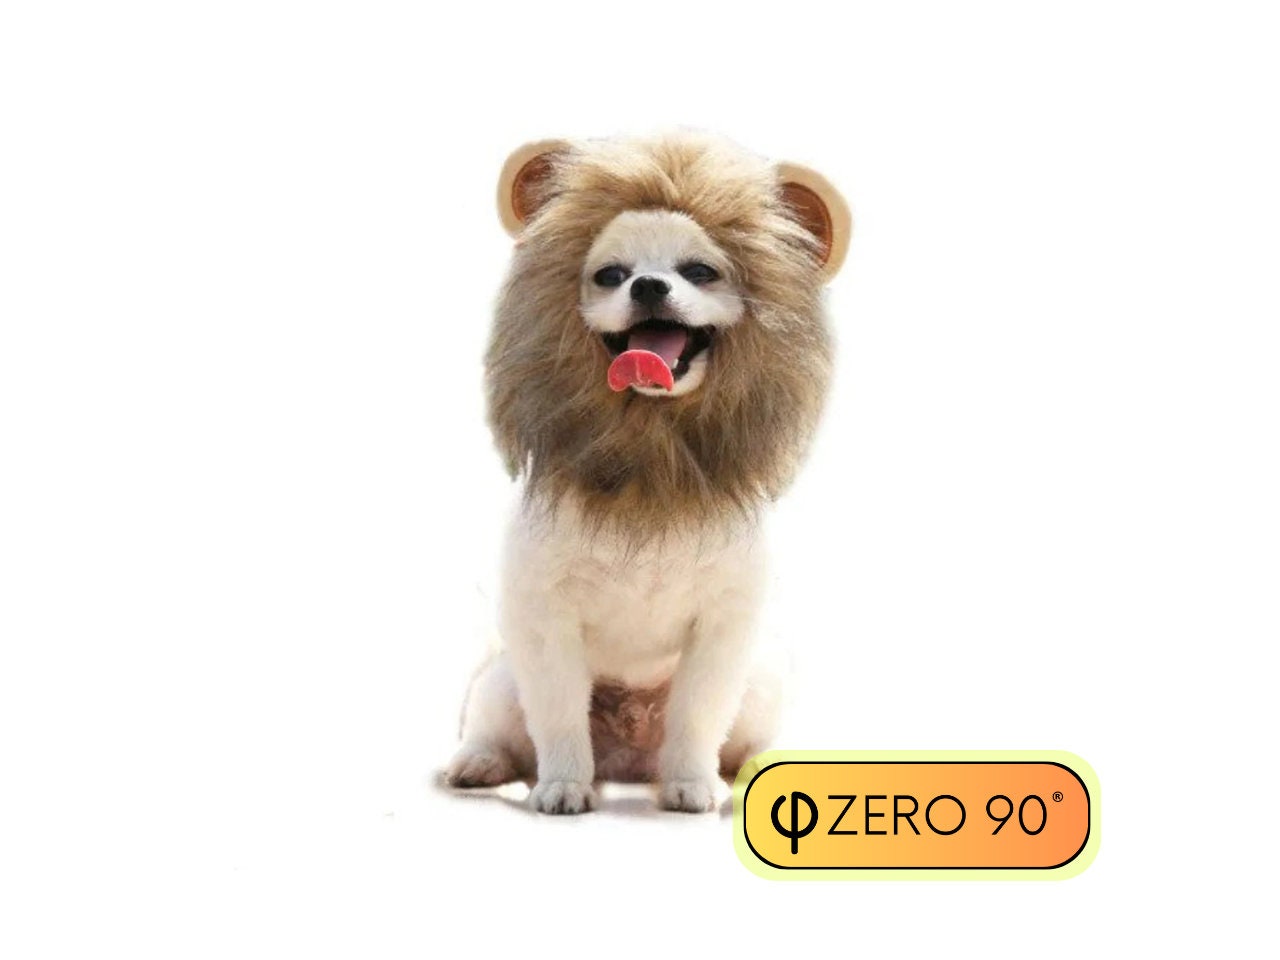 Kaufe Gefälschte Löwenmähne für Hundekostüm mit Geschenk-Löwen-Perücke,  Haustier-Dekoration, Hundeperücke